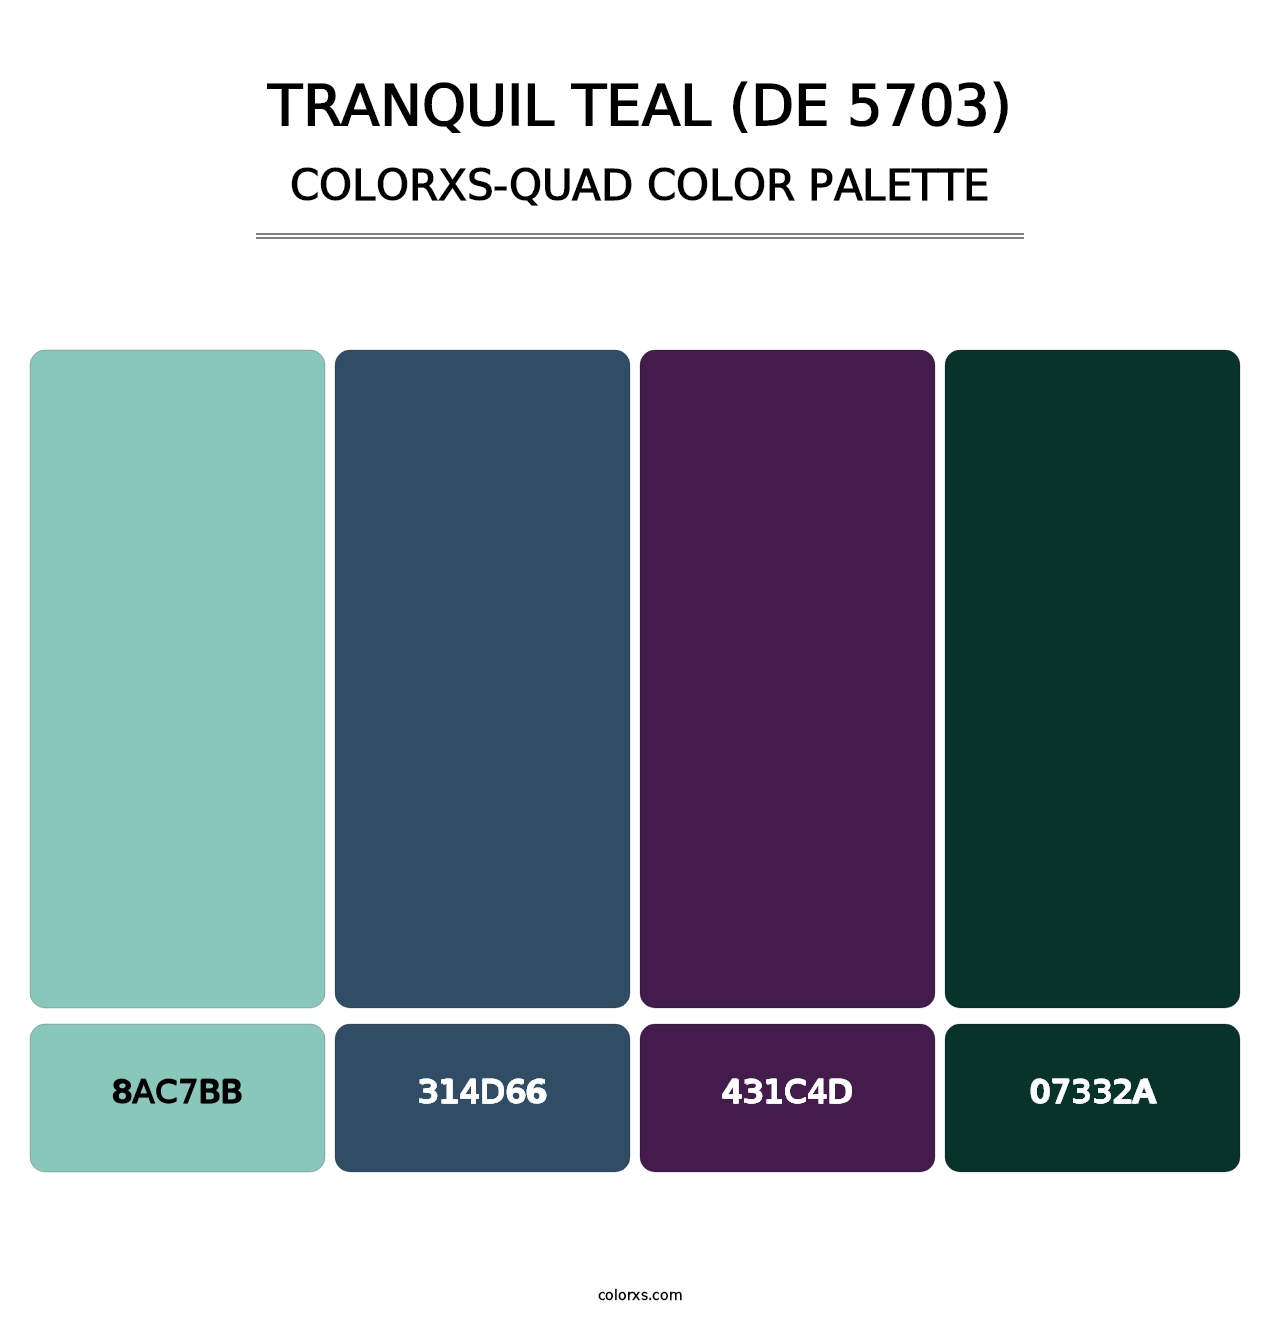 Tranquil Teal (DE 5703) - Colorxs Quad Palette